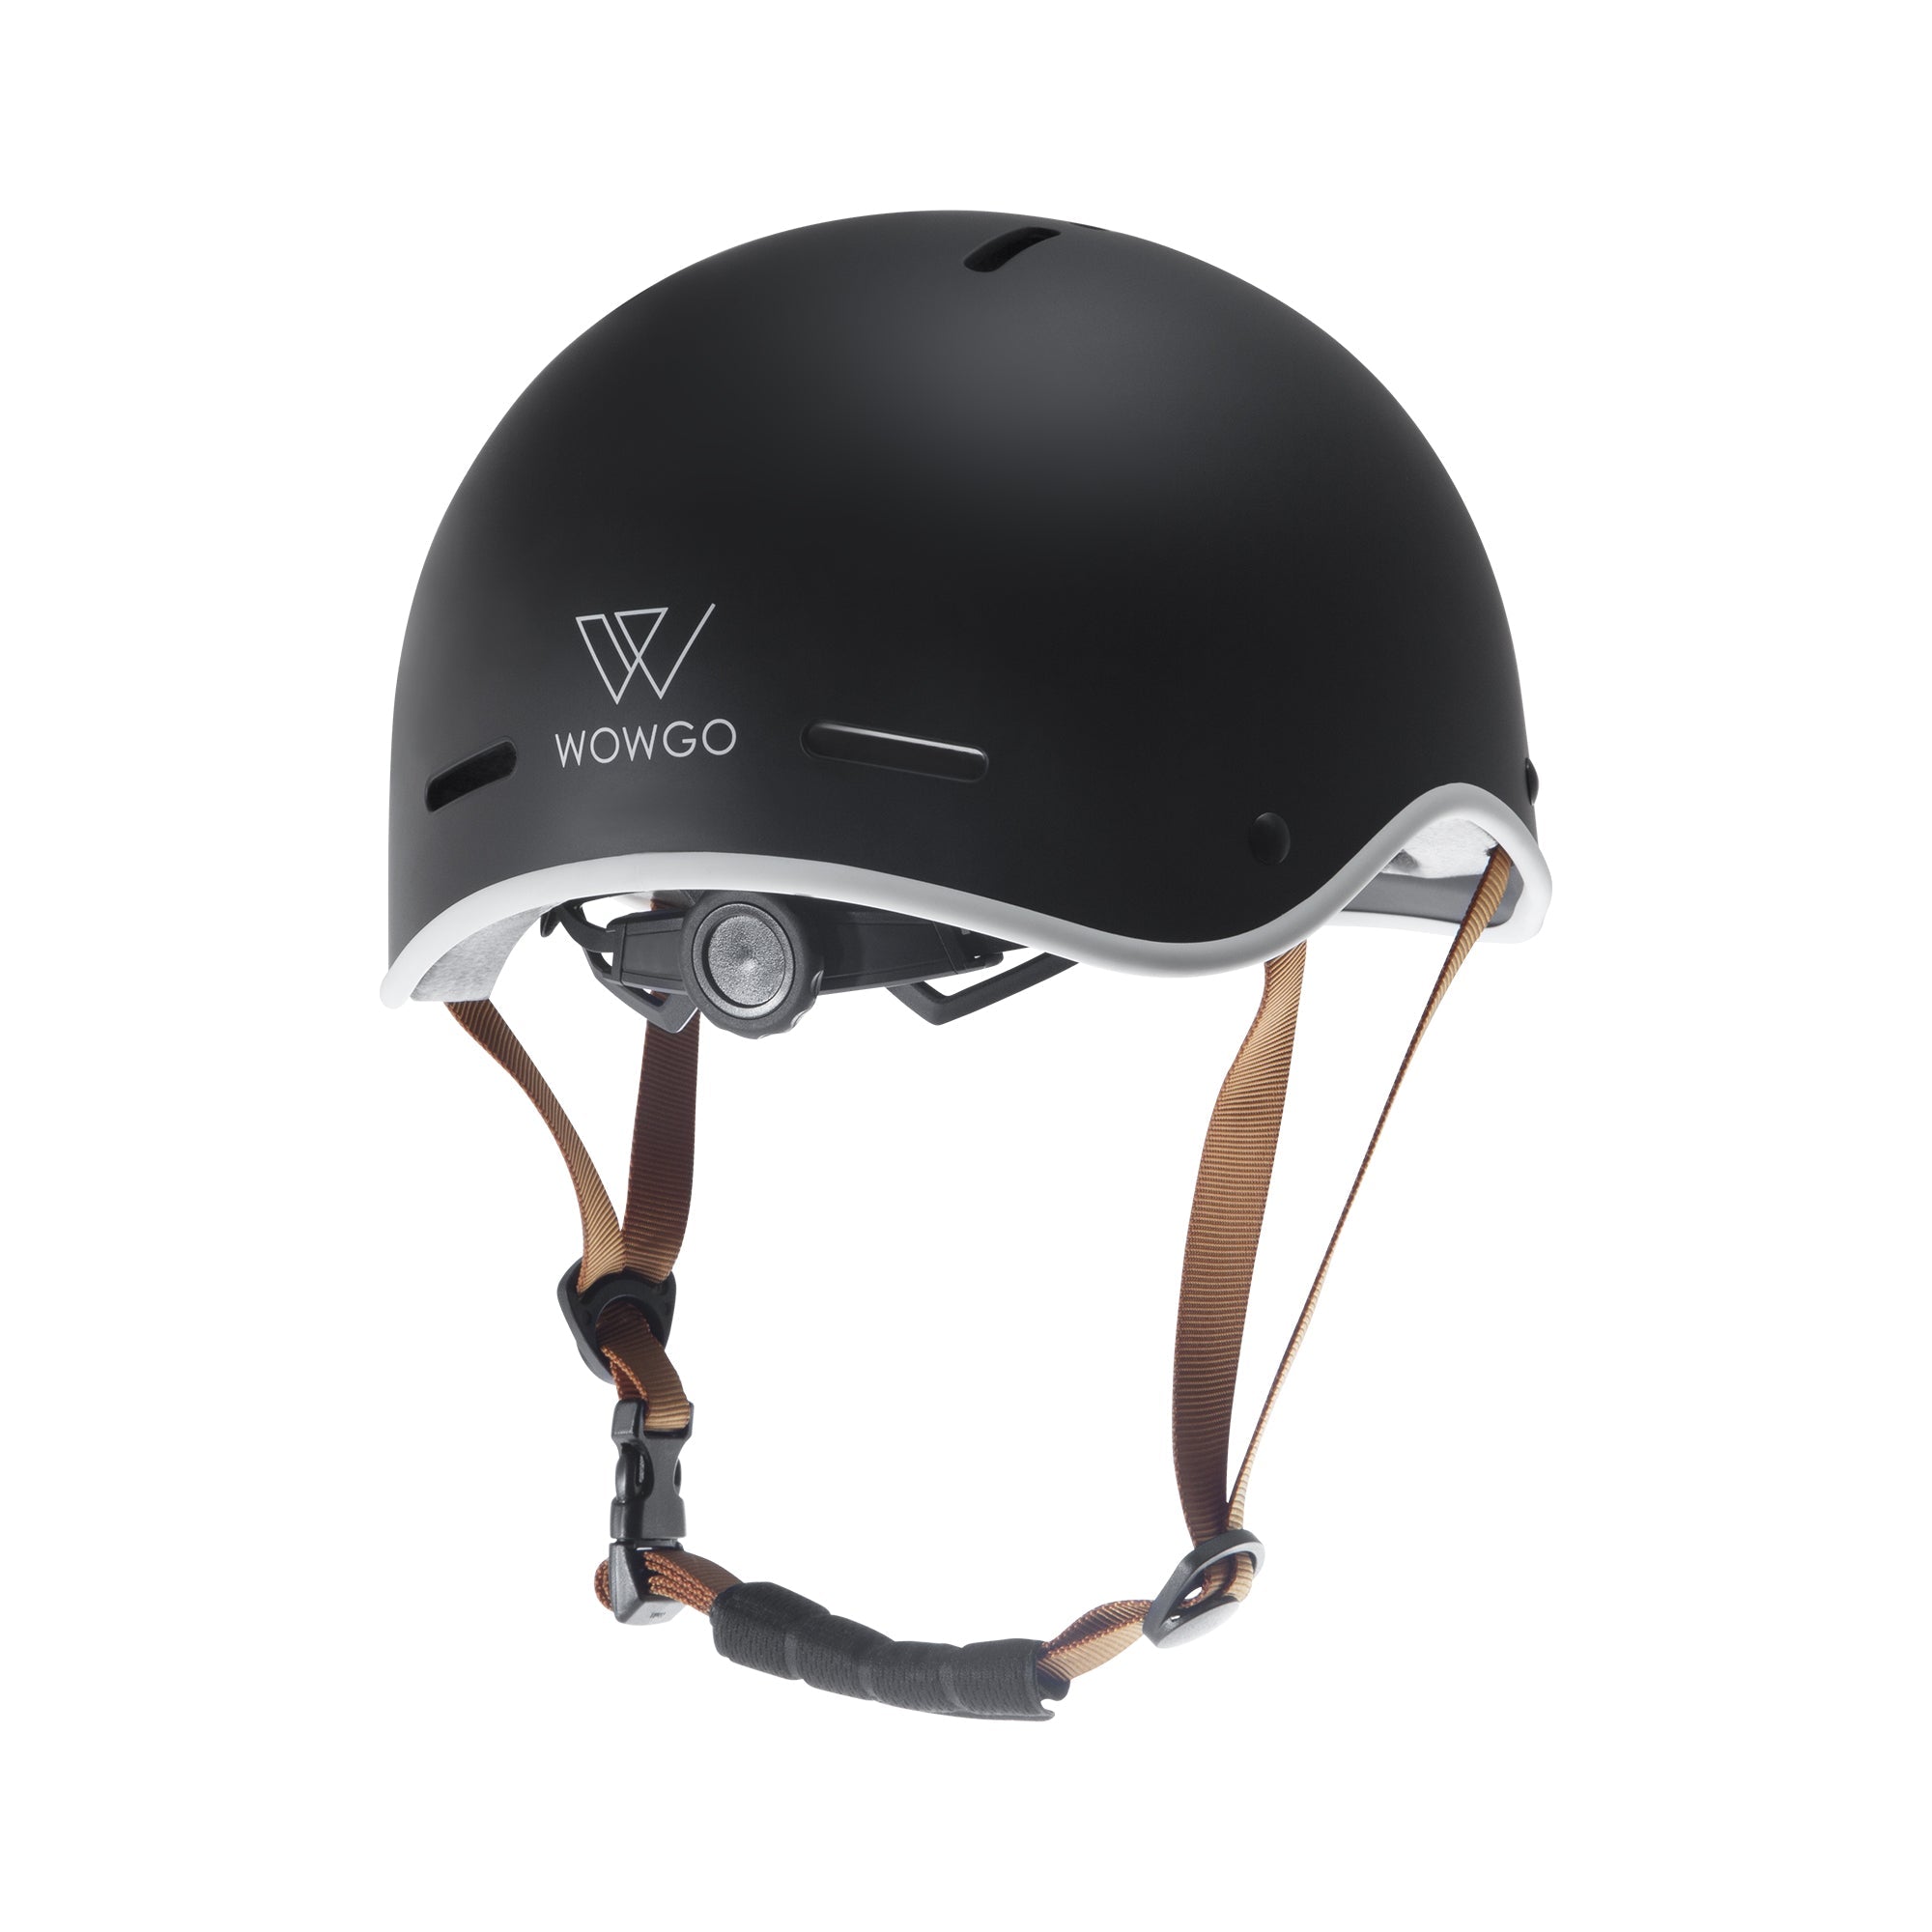 WowGo Helmet - WOWGO BOARD